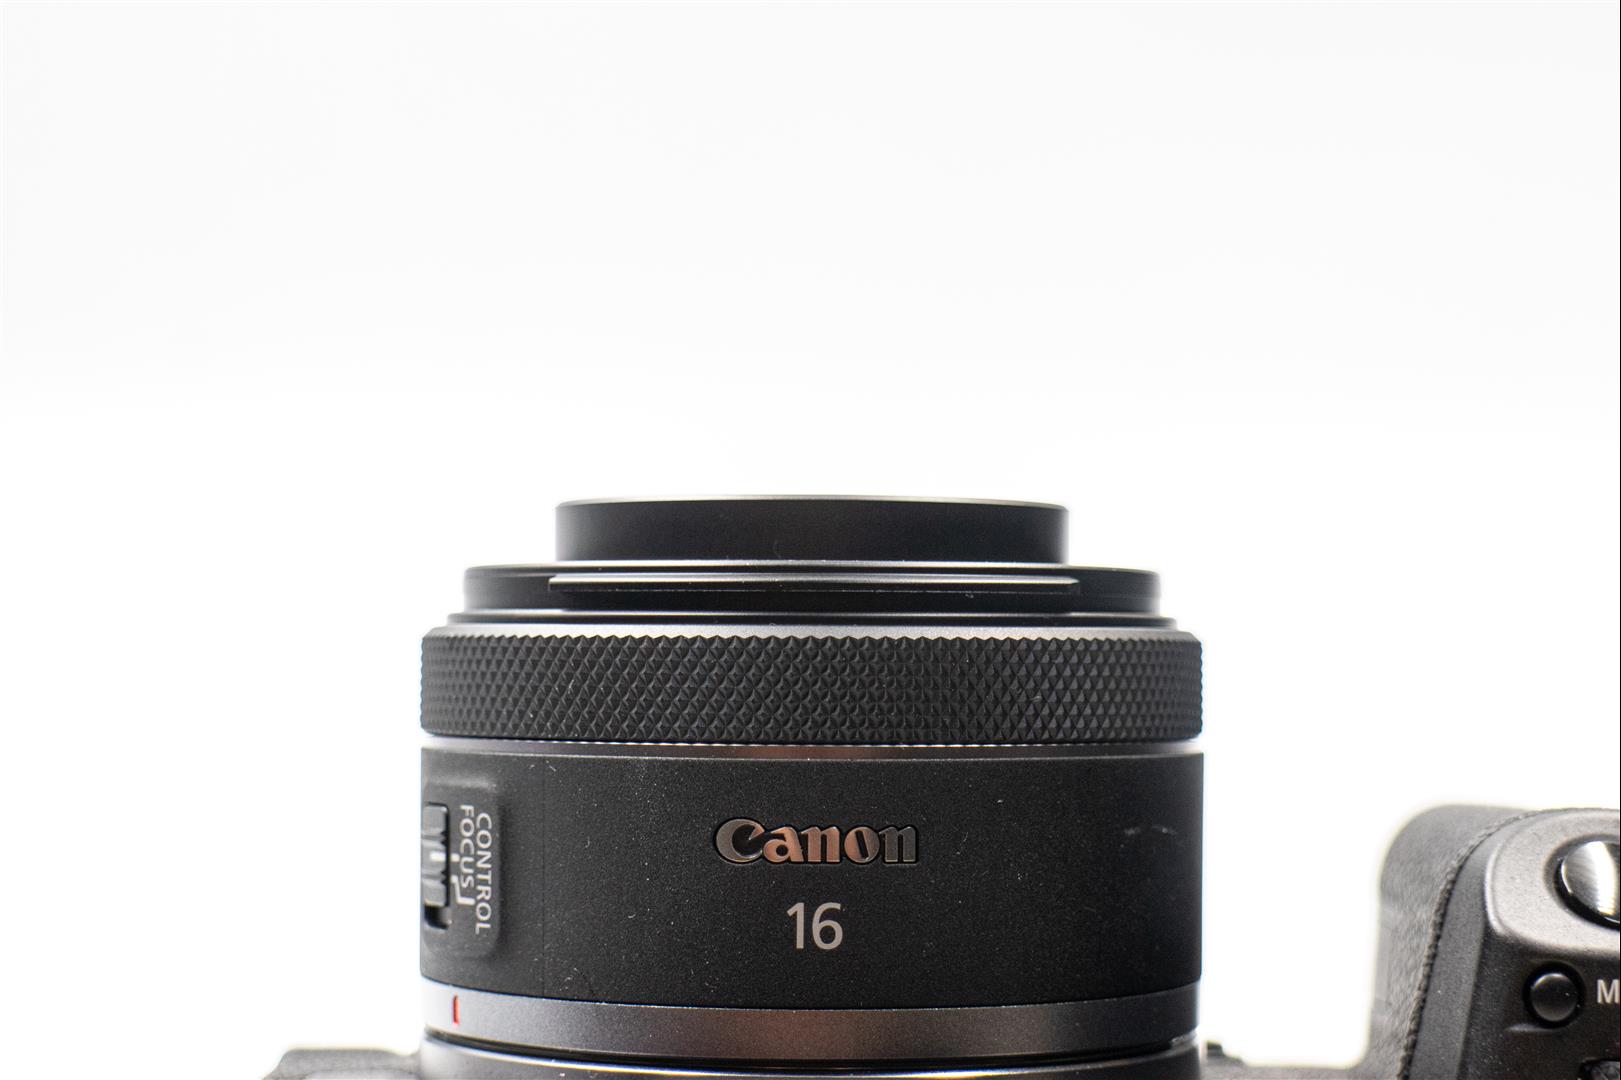 Canon RF 16mm F2.8 開箱